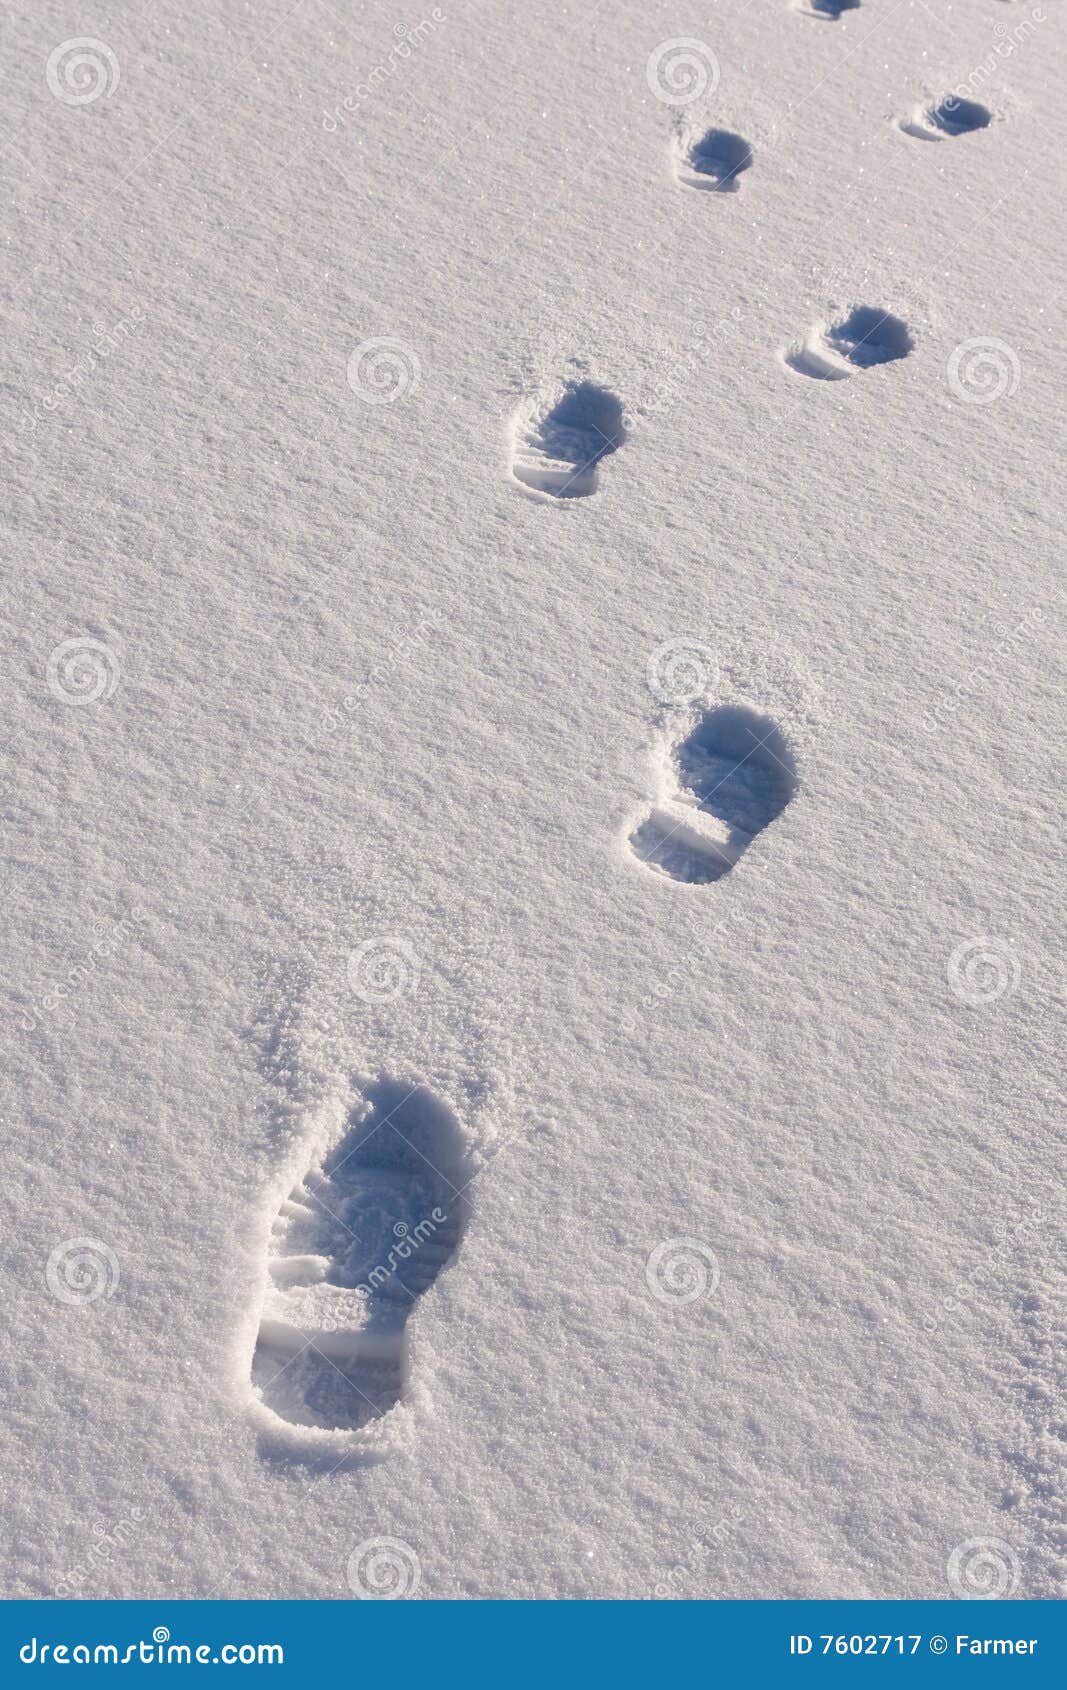 Не было видно следов. Следы на снегу. Следы человека на снегу. Объемные следы. Отпечатки ног на снегу.